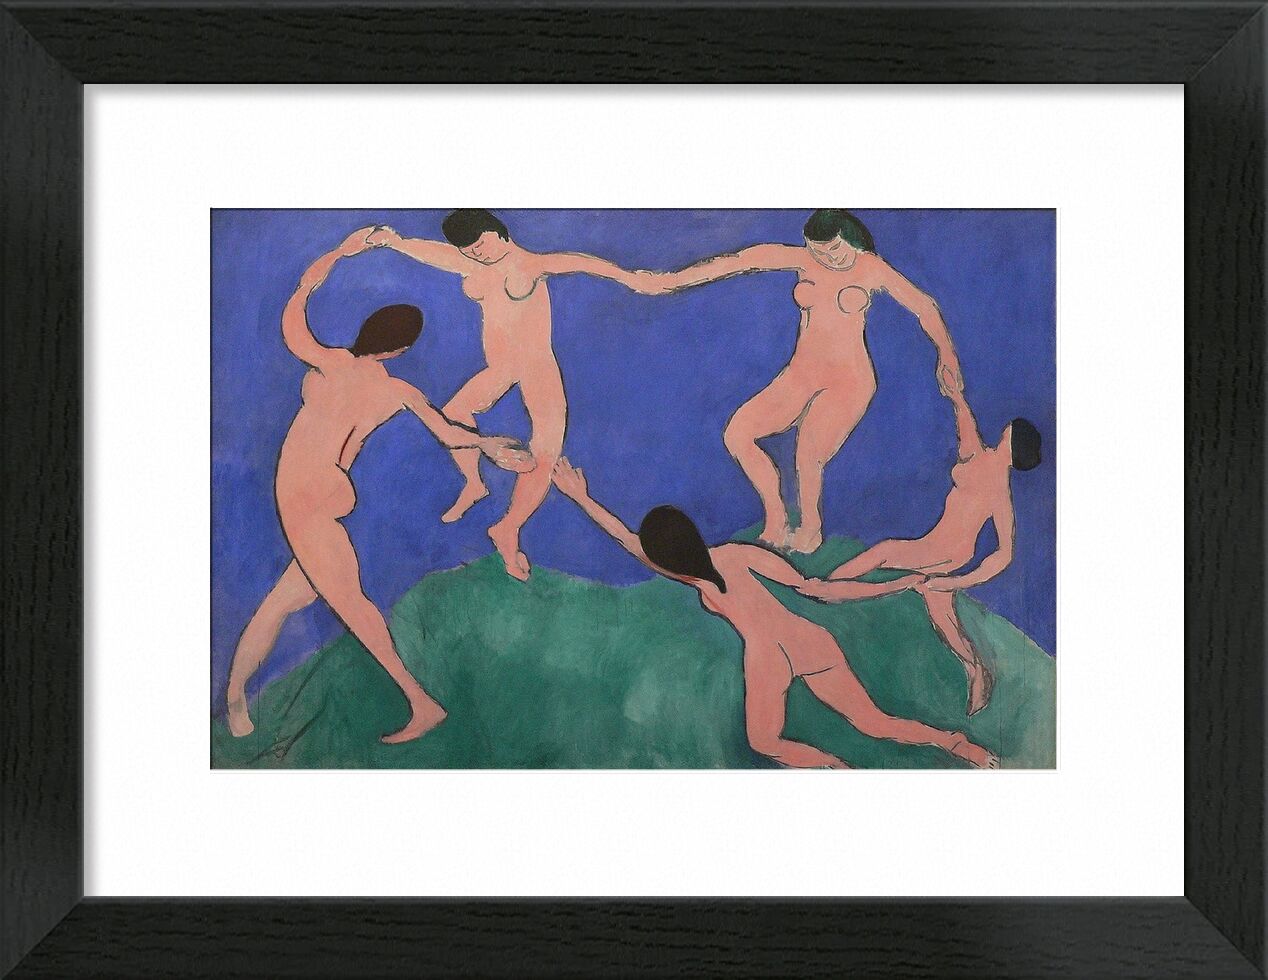 Dance I - Henri Matisse von Bildende Kunst, Prodi Art, Matisse, Malerei, Musik, Tanz, nackt